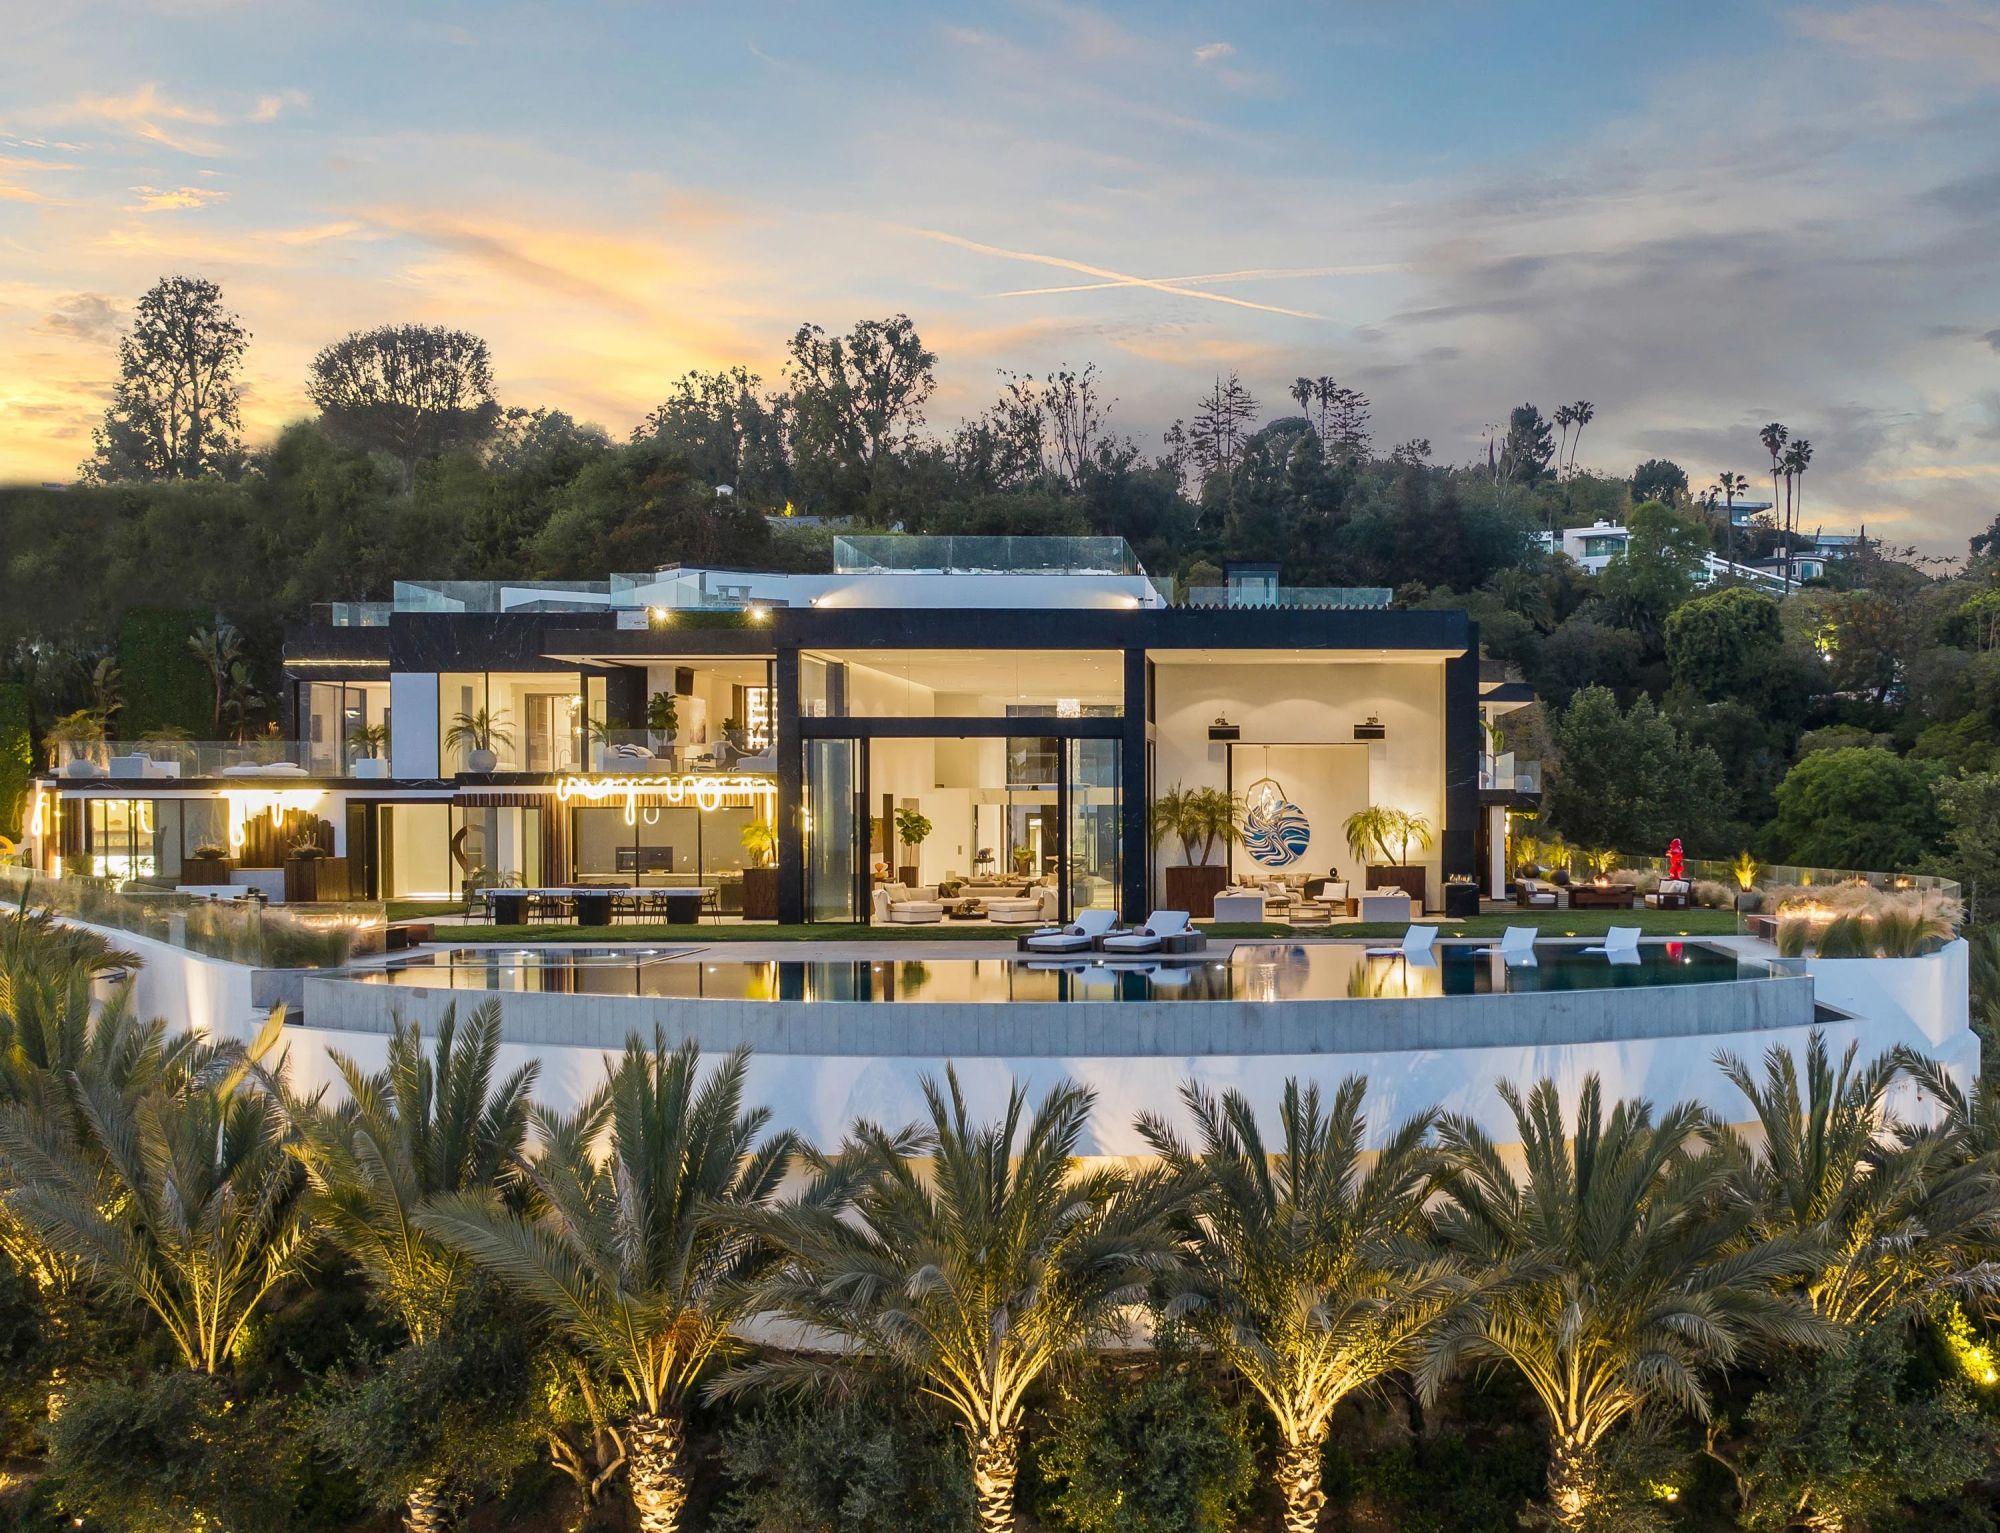 Los Angeles à découvrir depuis ce chef-d'œuvre architectural de Bel Air | Californie